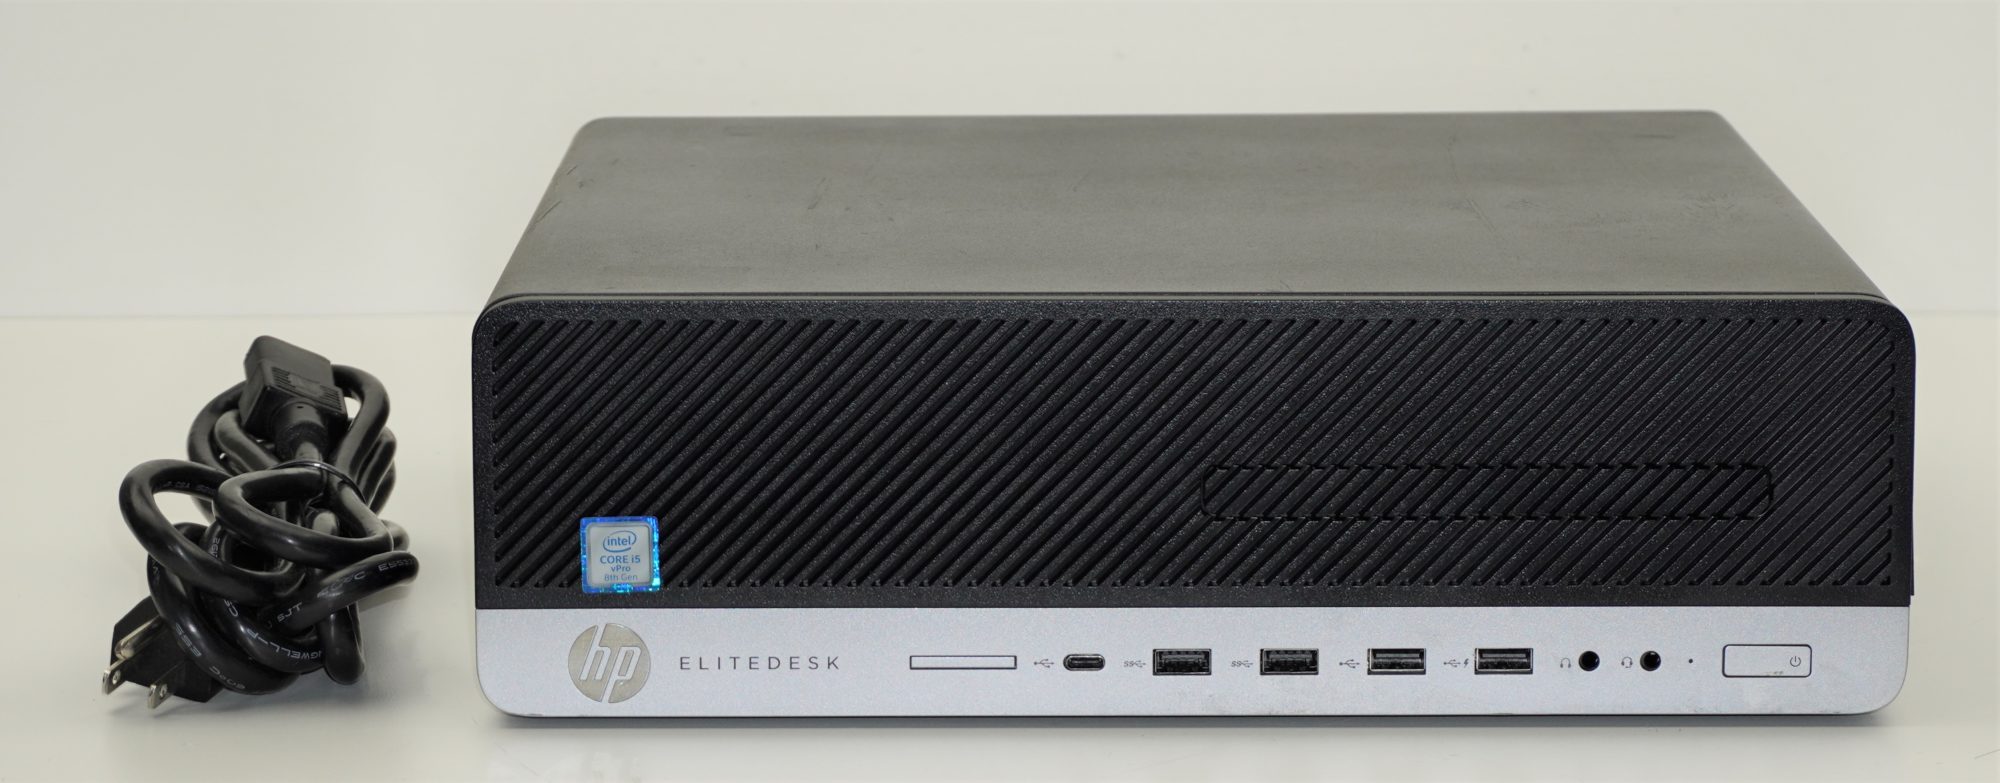 HP EliteDesk 800 G4 SFF i5-8500 @ 3.30GHz | 8Gb Ram | 256Gb SSD